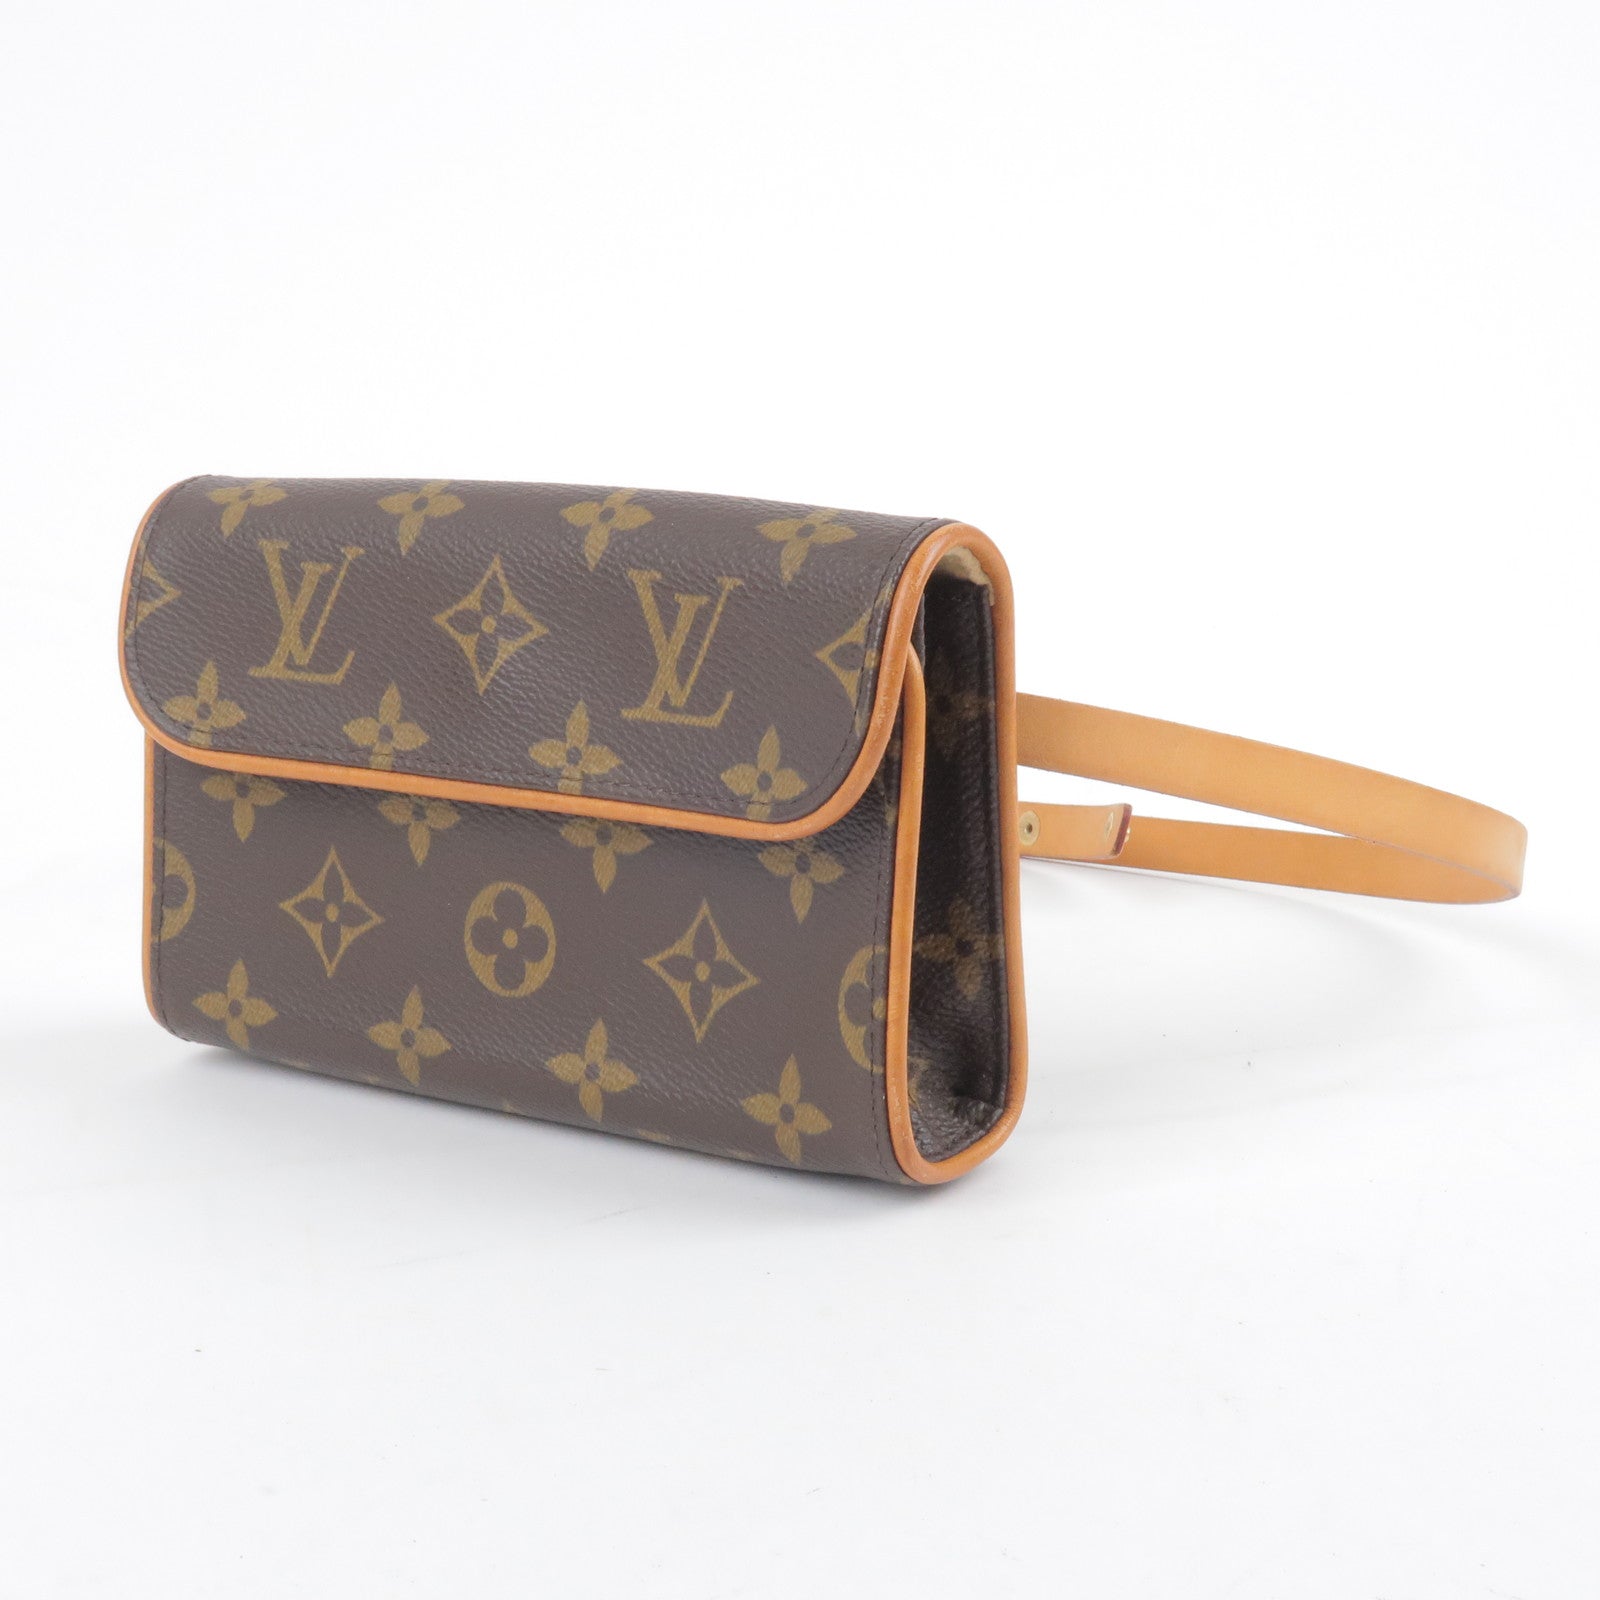 Louis Vuitton Capucines Bag Rainbow Gradient Leather Mini Auction